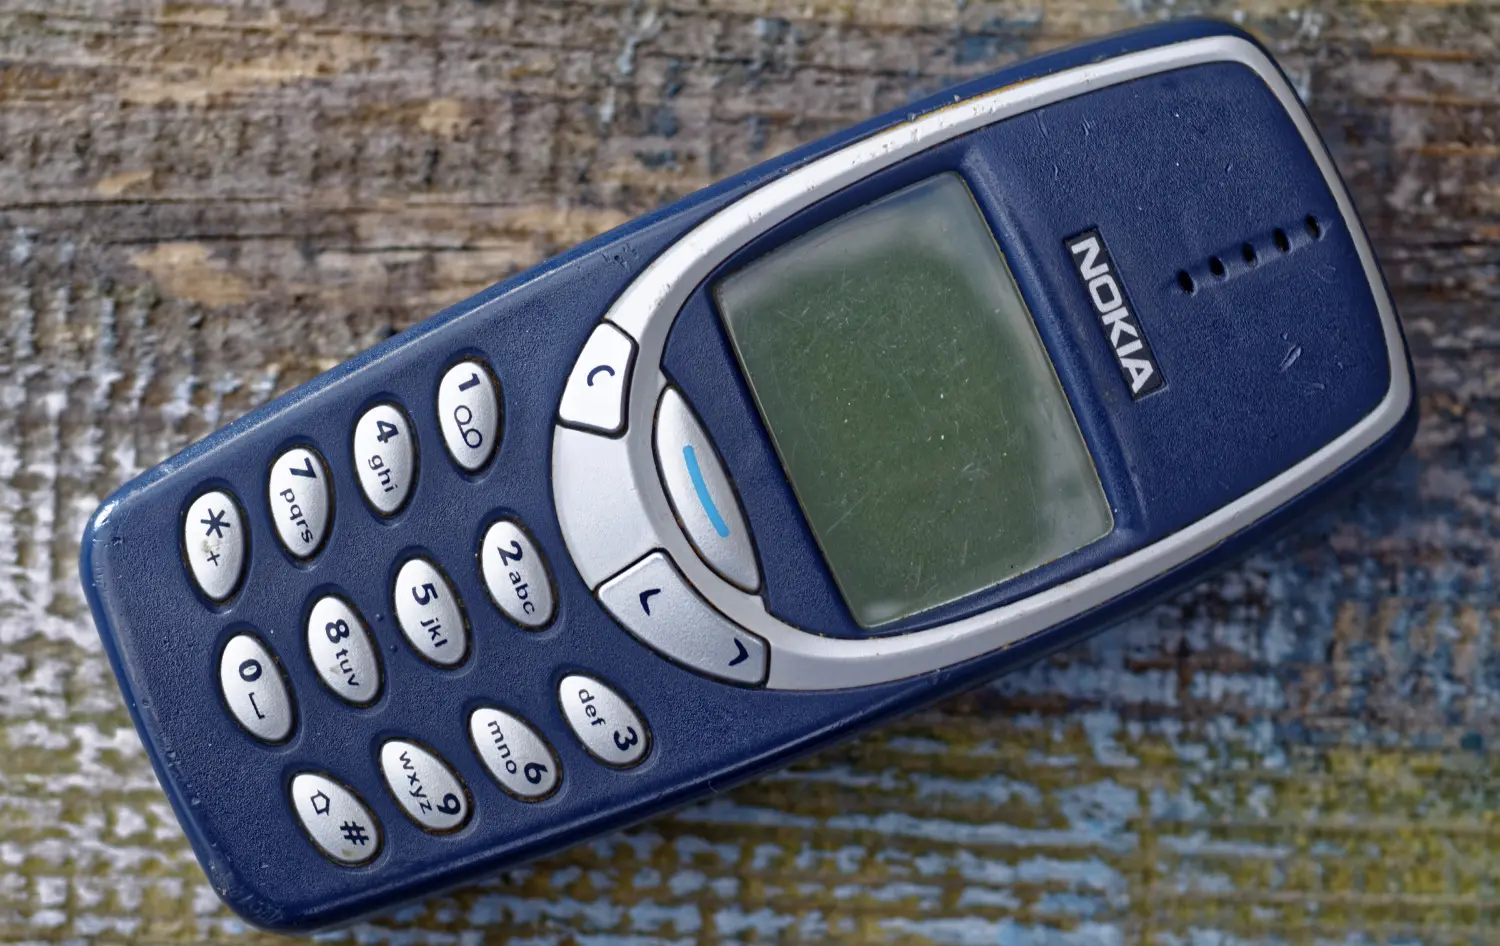 ¿Qué sistema operativo tendrá el Nokia 3310? Ya lo sabemos, conocelo